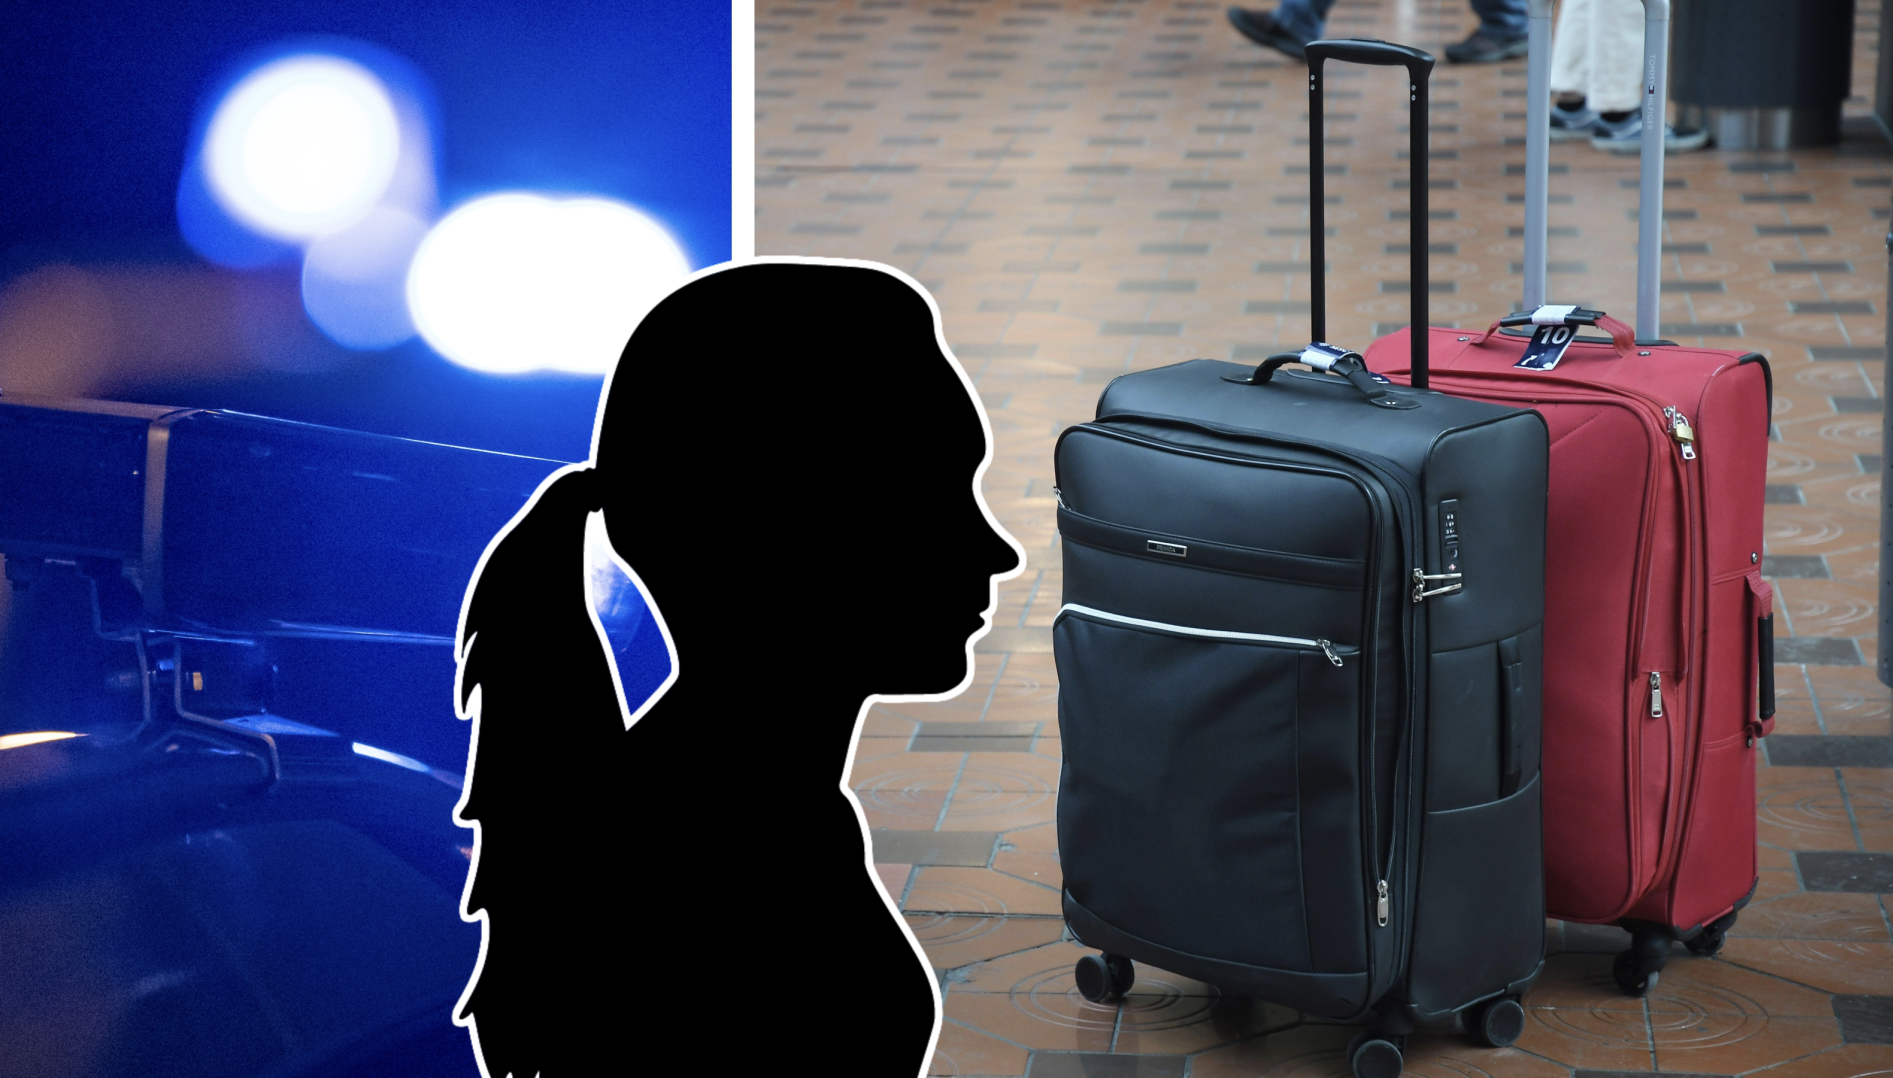 Kvinnans kvarlevor hittades i två resväskor.